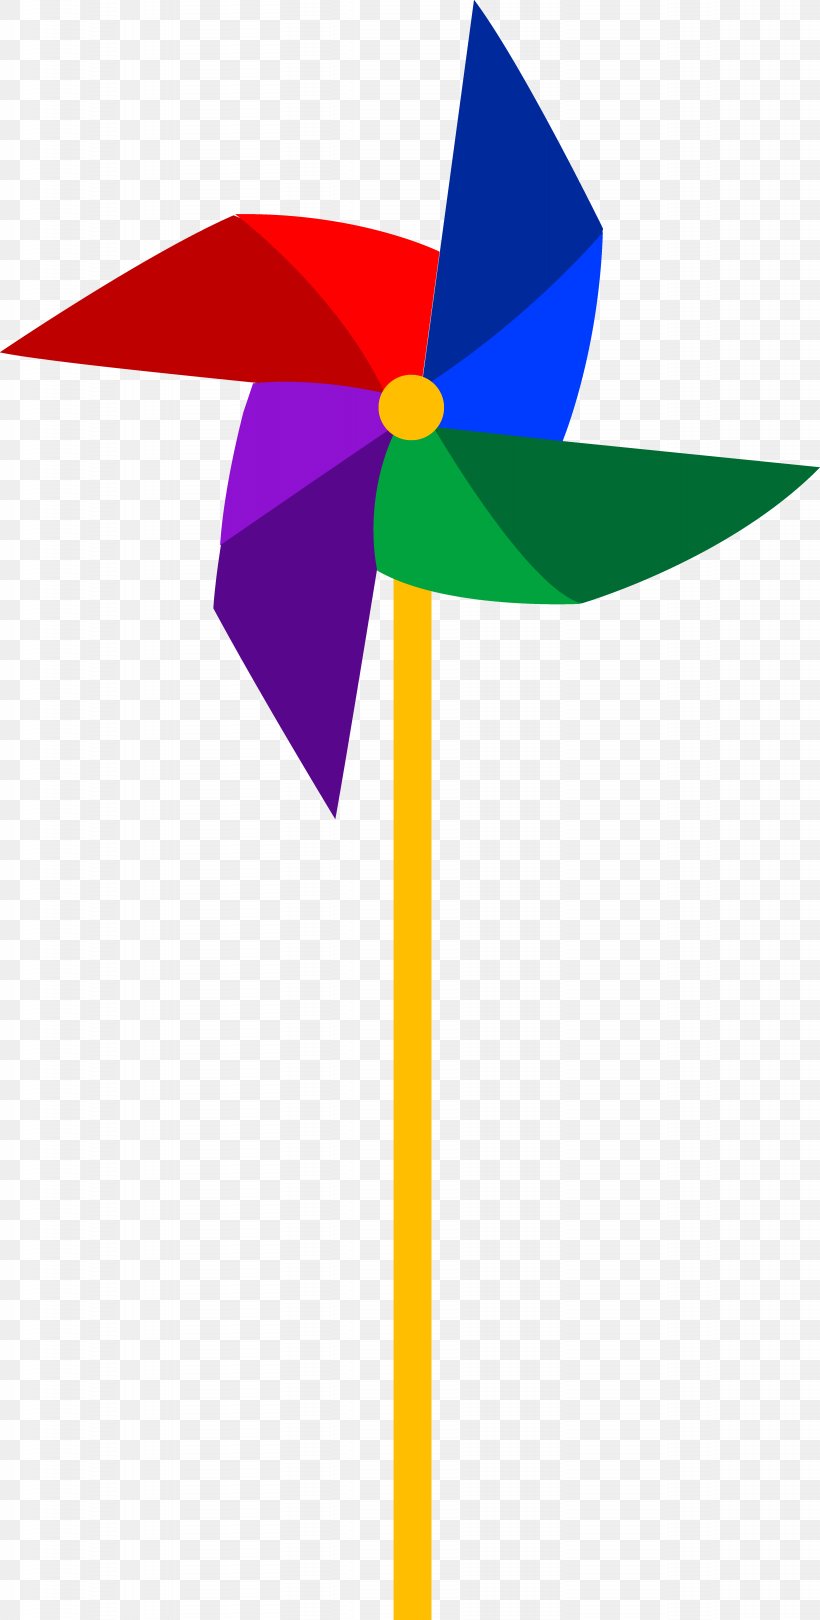 Pinwheel Toy Royalty-free Clip Art, PNG, 4713x9315px, Pinwheel, Artwork, Flower, Leaf, Royaltyfree Download Free